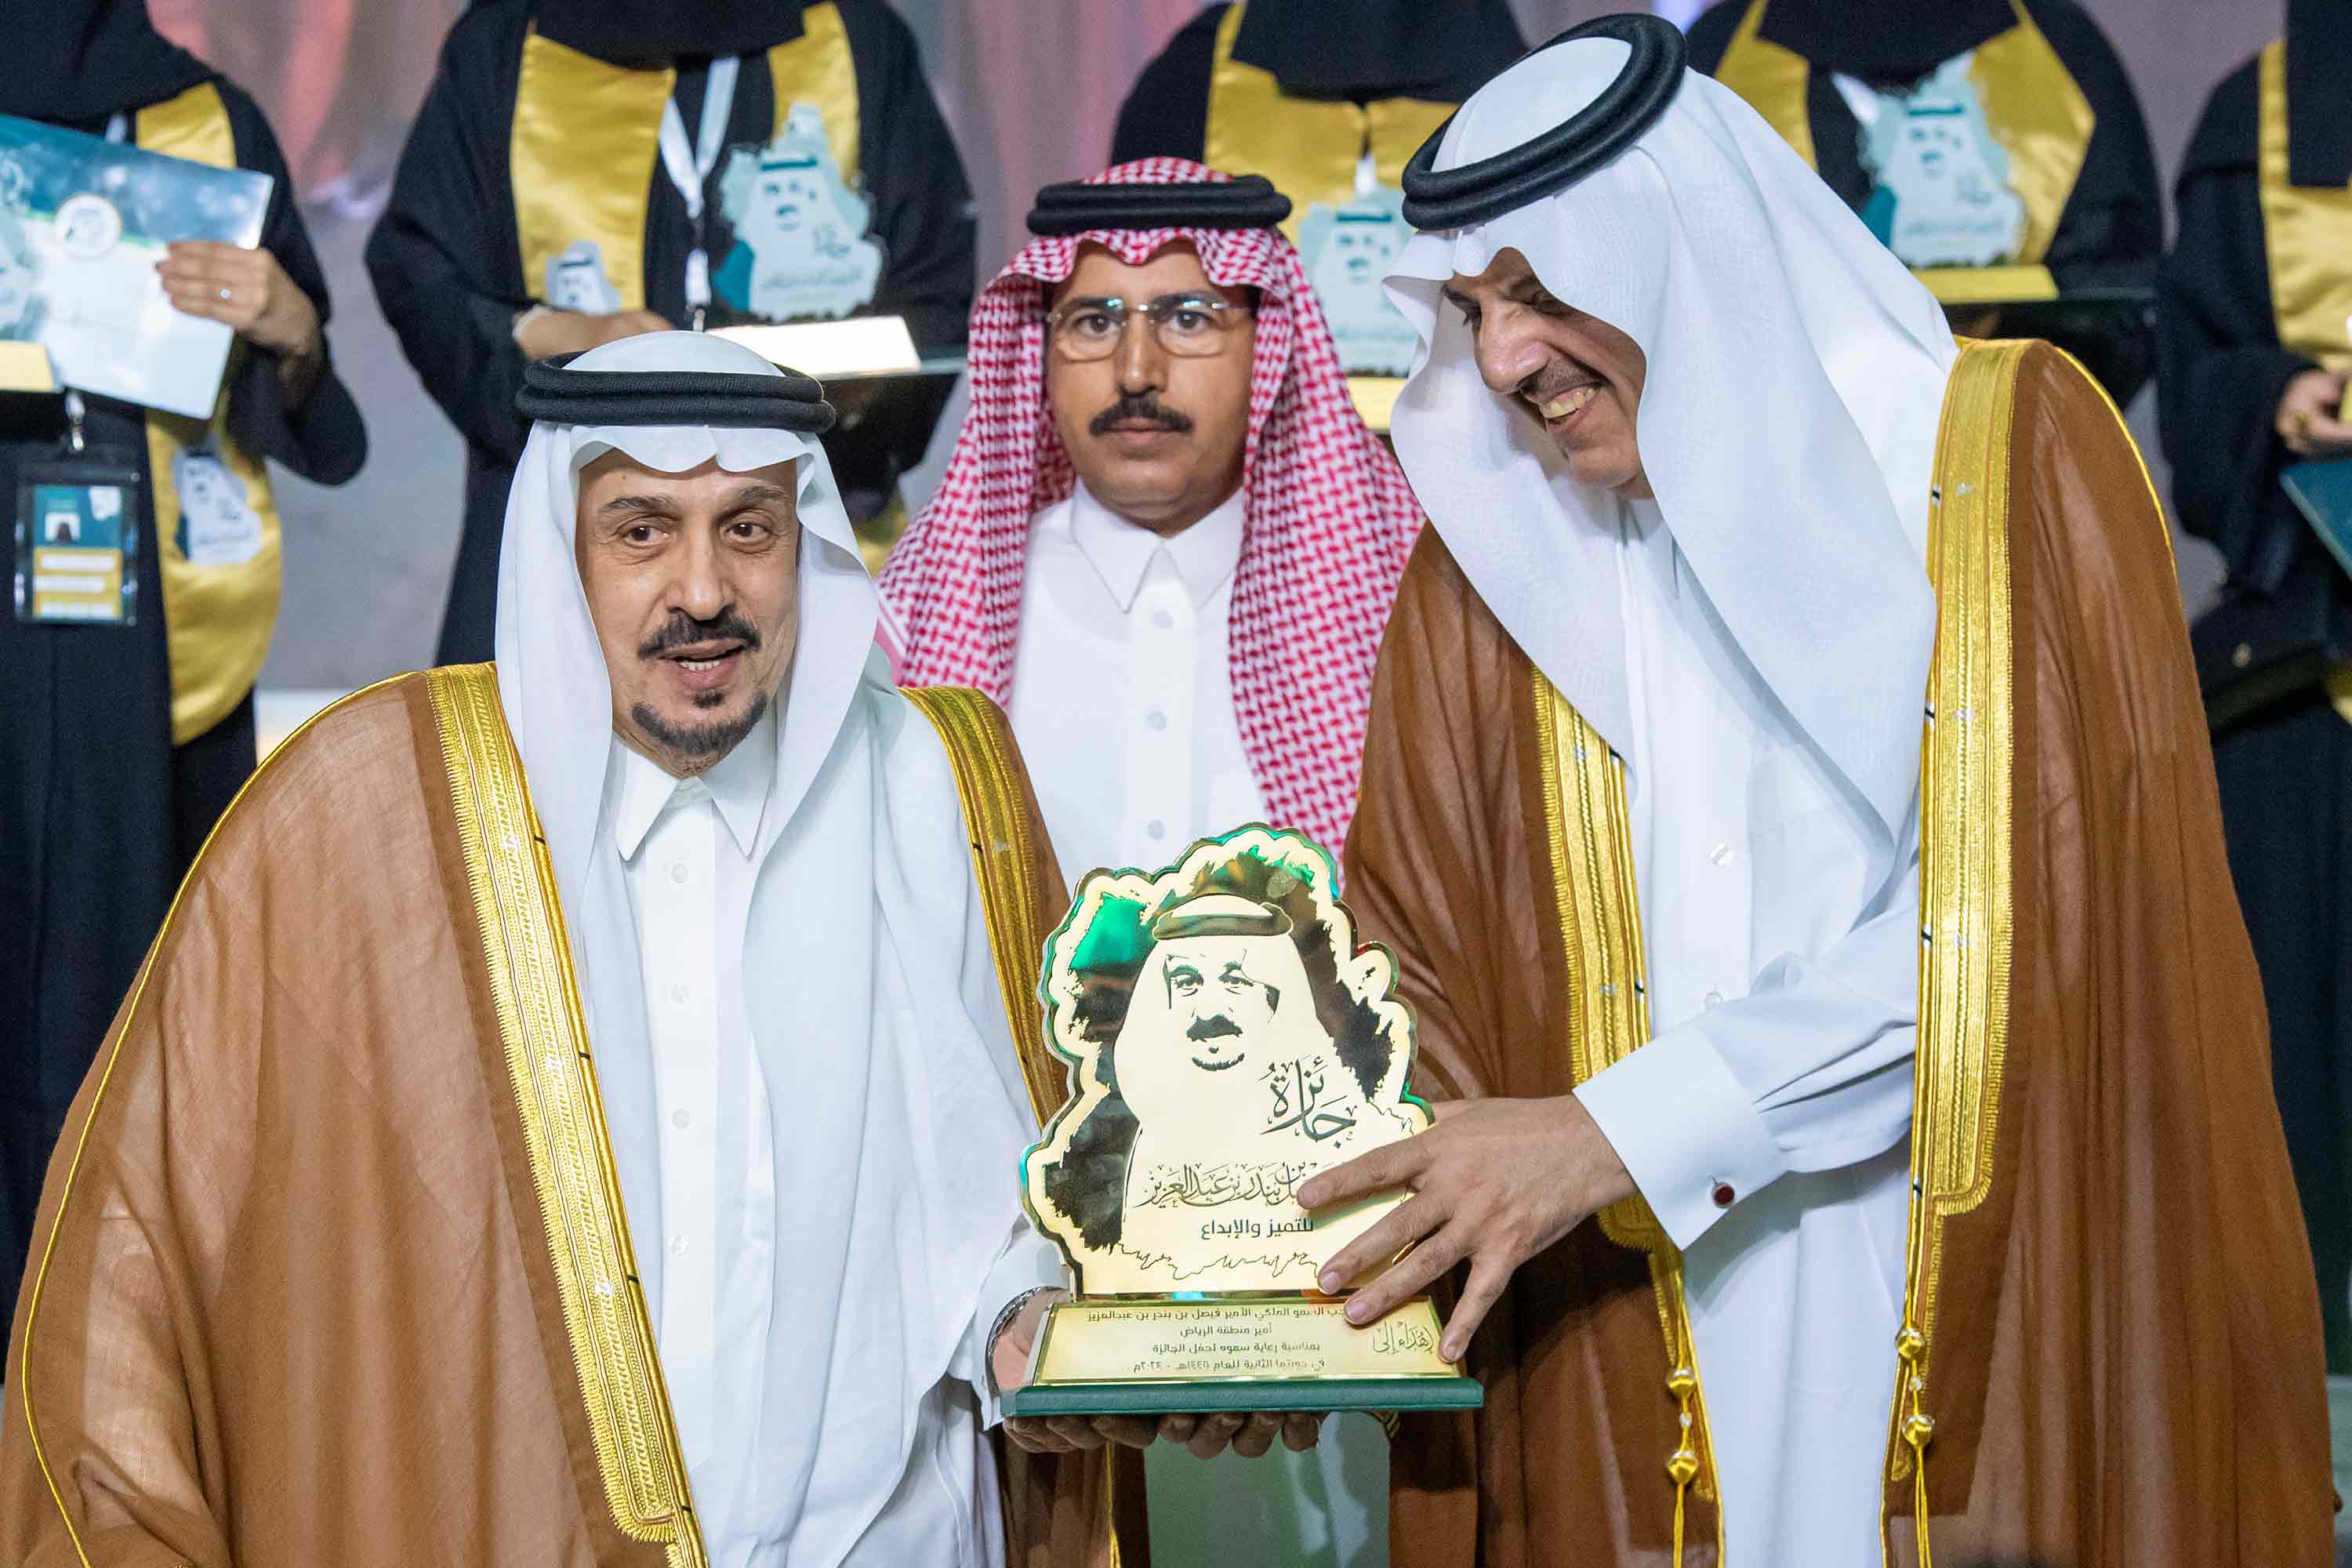 سمو أمير منطقة الرياض يرعى حفل تكريم الفائزين بجائزة سموه للتميز والإبداع في دورتها الثانية بالجامعة